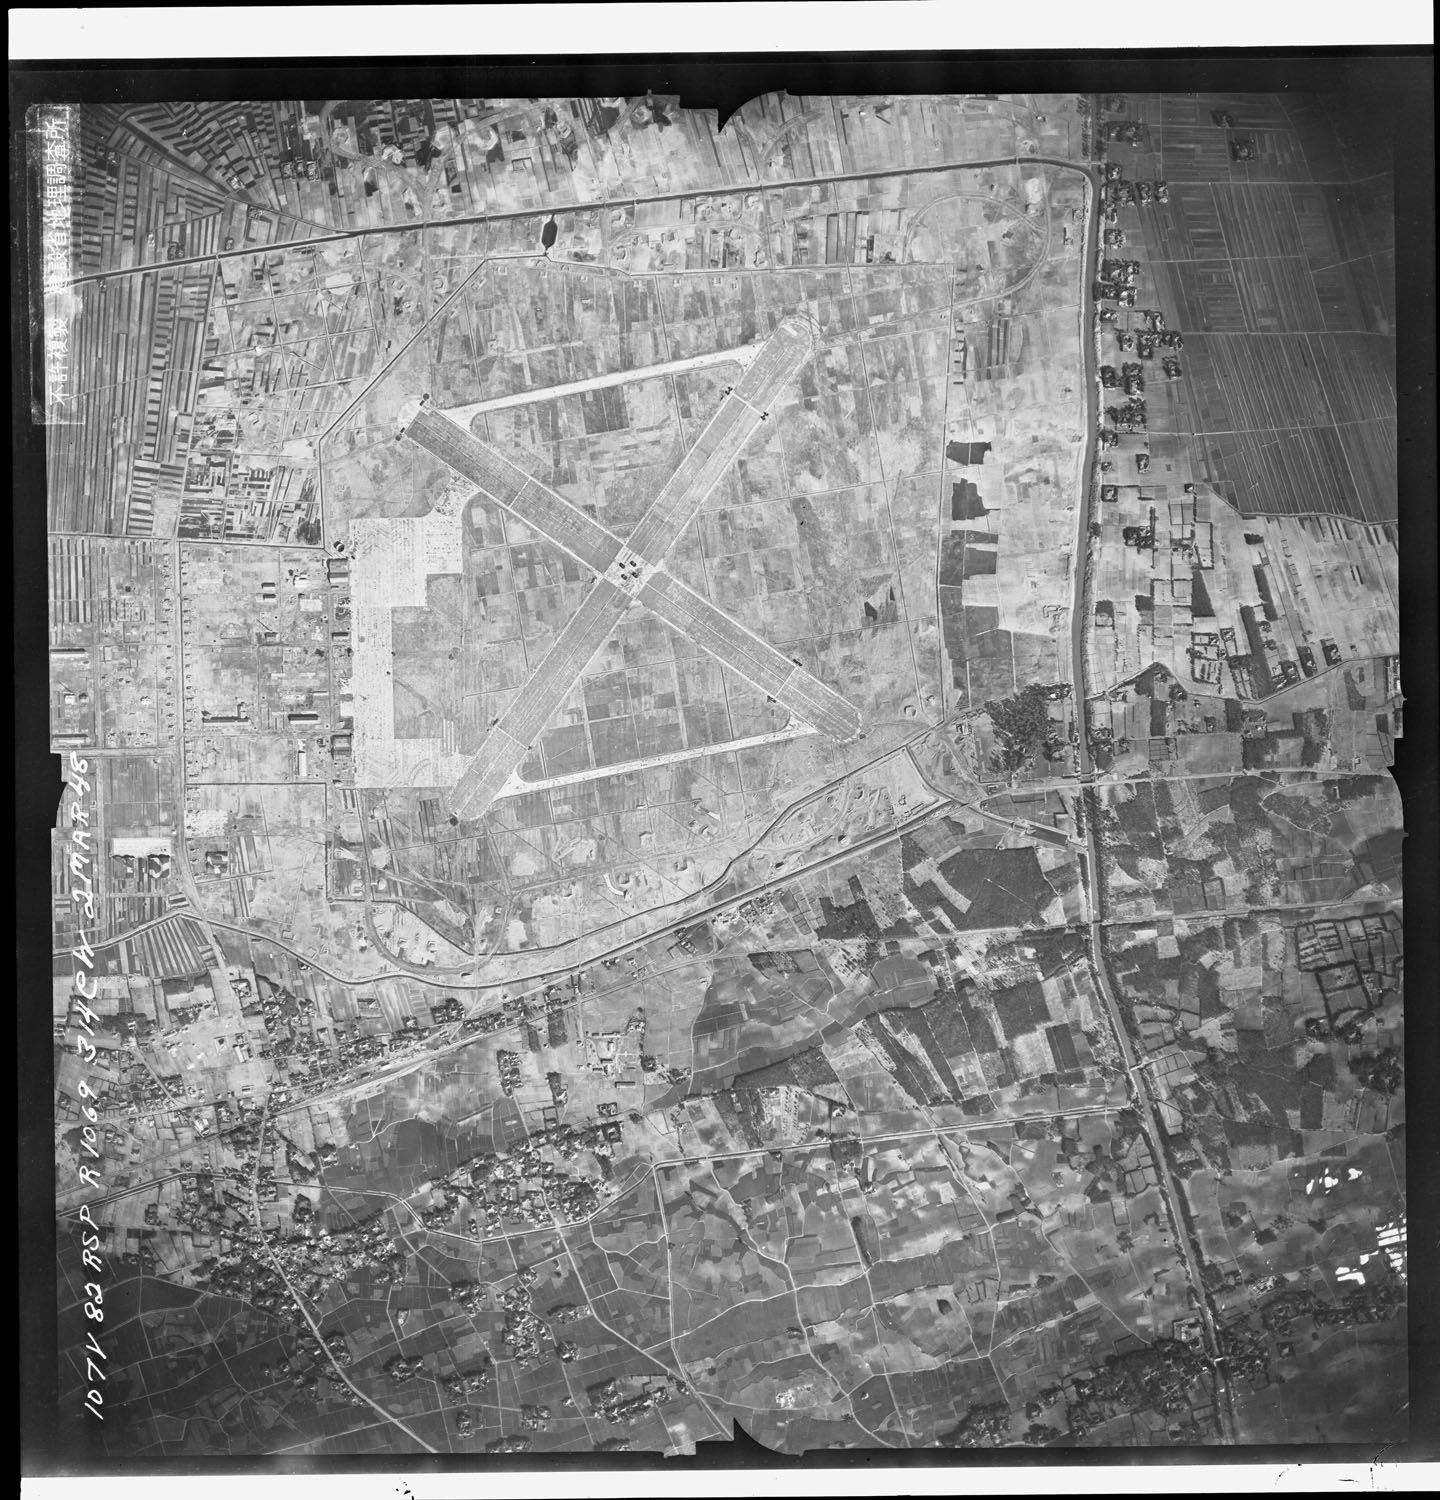 戦後まもなくして米軍機が空撮した航空写真。十字状というよりX字状の滑走路がよく分かる。滑走路左手は駐機場で、航空隊兵舎などの敷地があった。滑走路の周囲には半円状の小さな物体が点在する。それは掩体壕だ。 ■国土地理院航空写真　昭和23（1948）年３月2日米軍撮影　国土地理院地図・空中写真閲覧サービスより